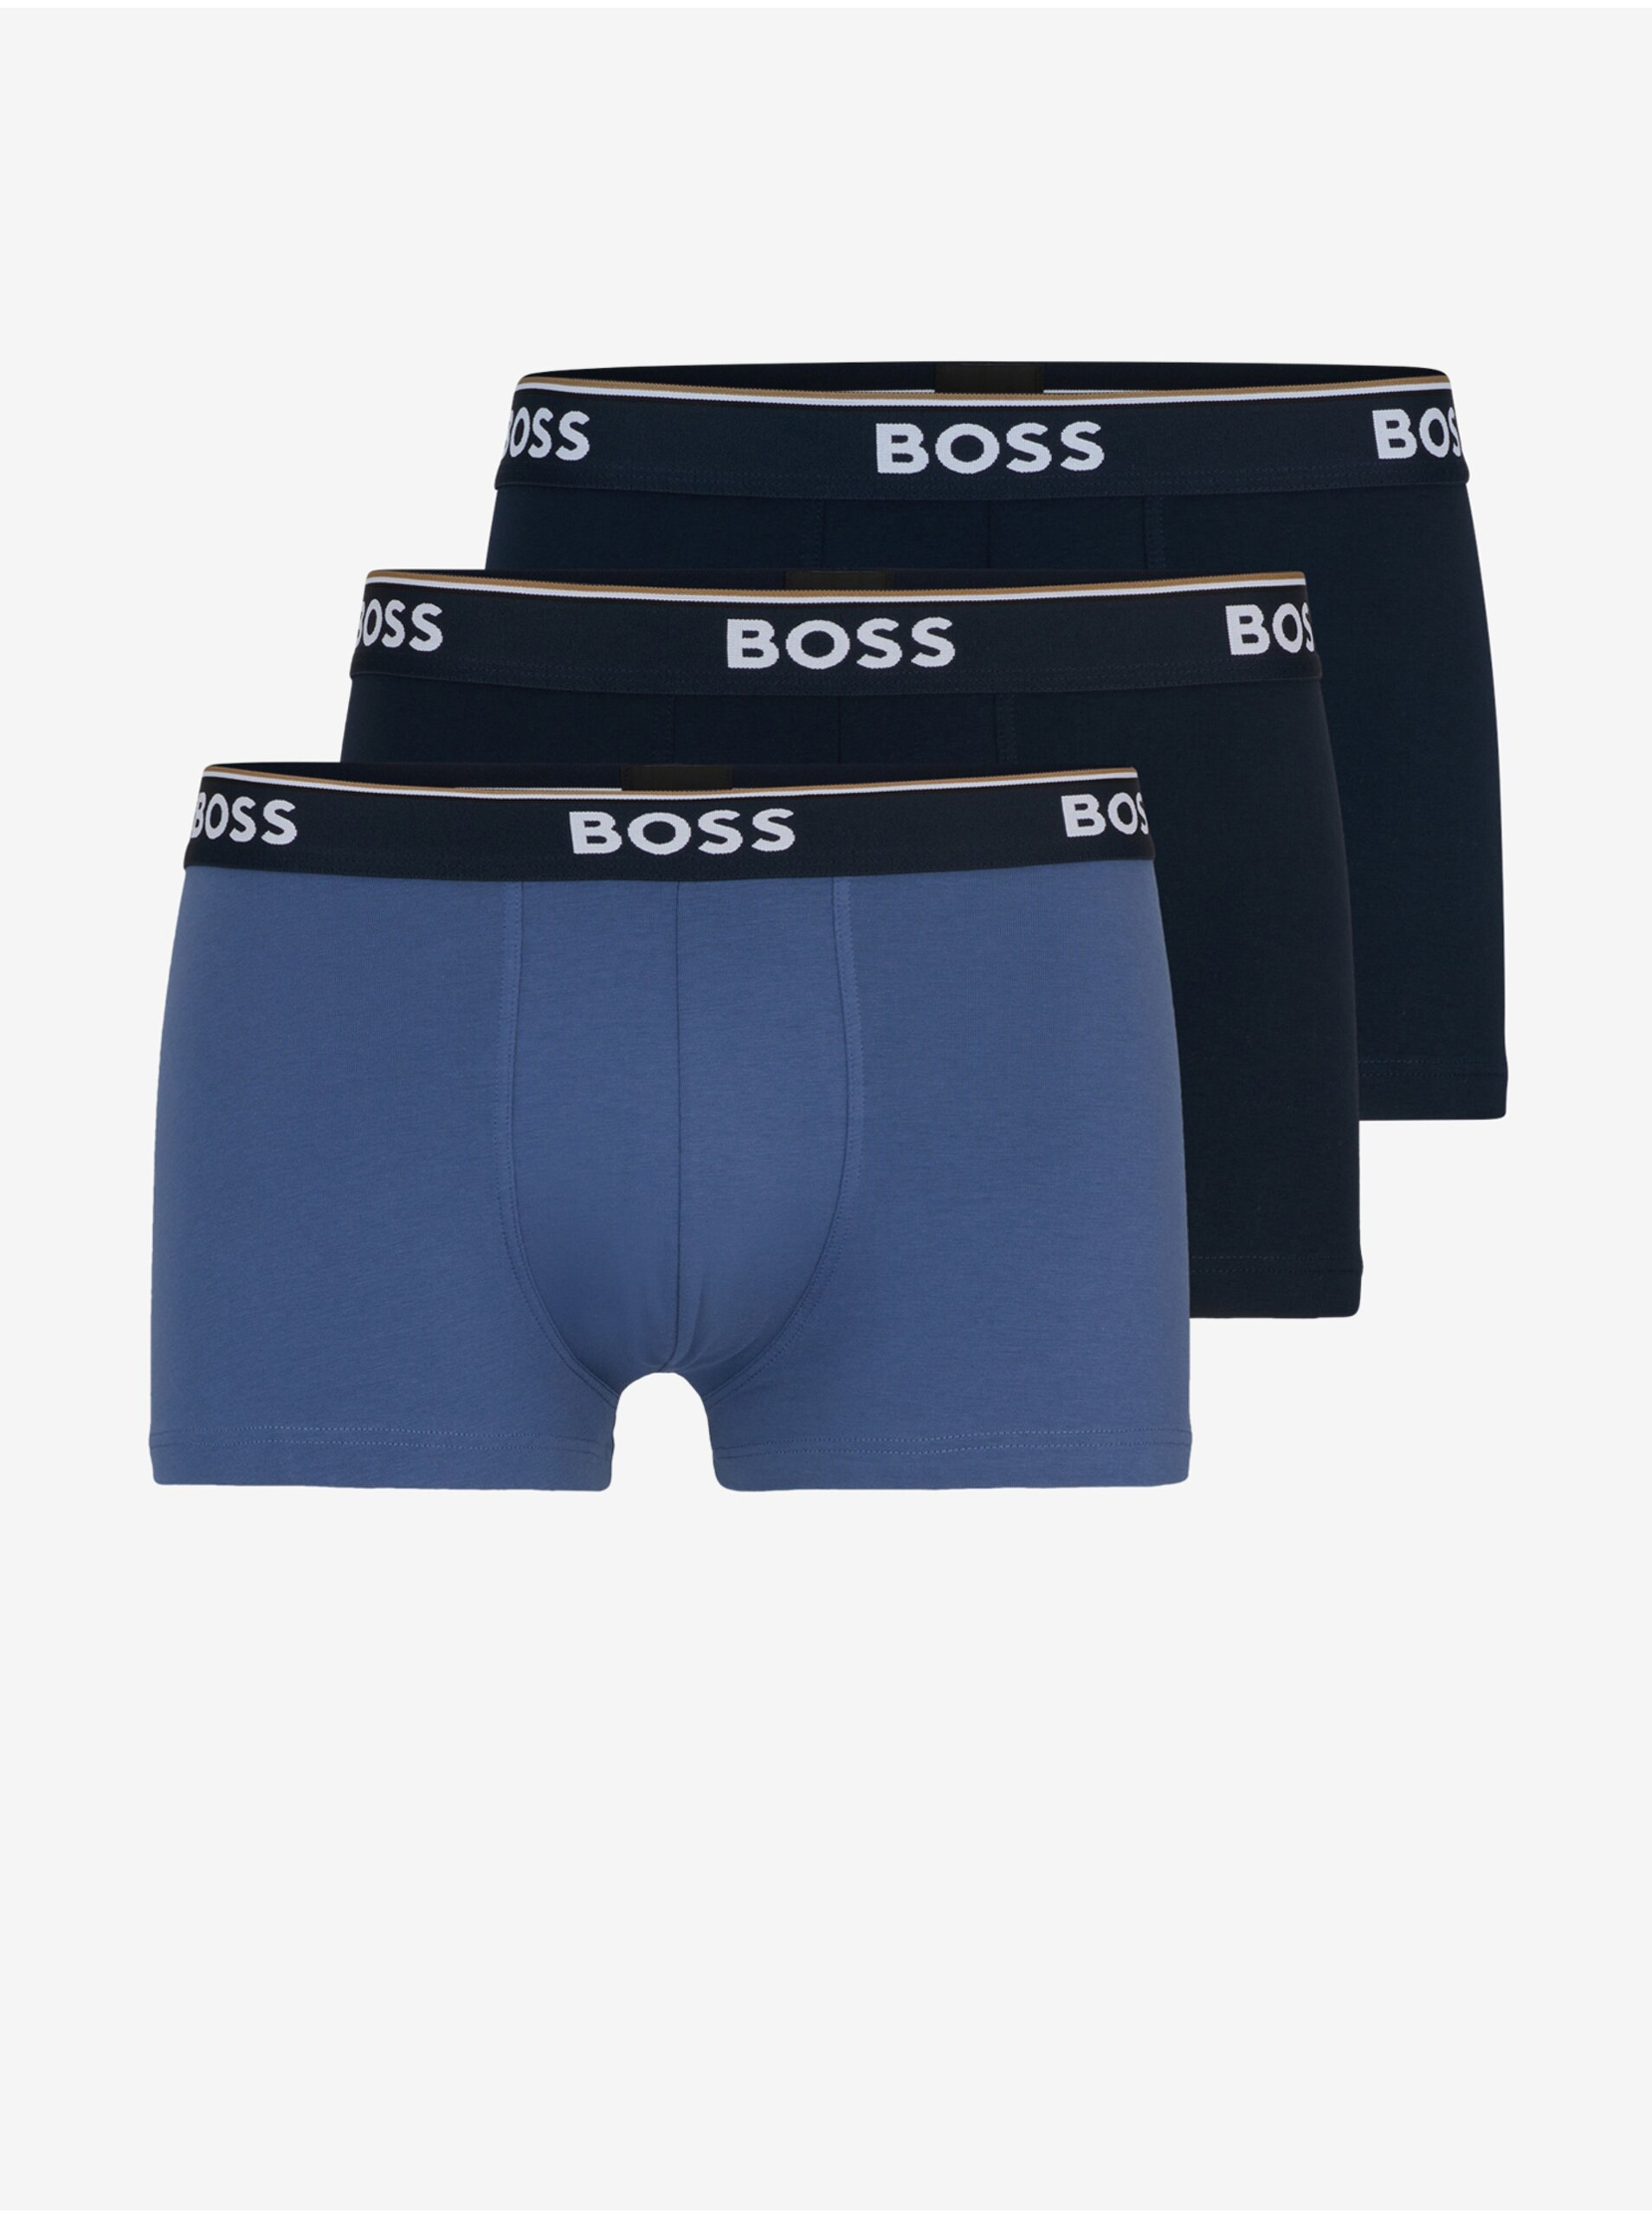 E-shop Súprava troch pánskych boxeriek v modrej a čiernej farbe BOSS